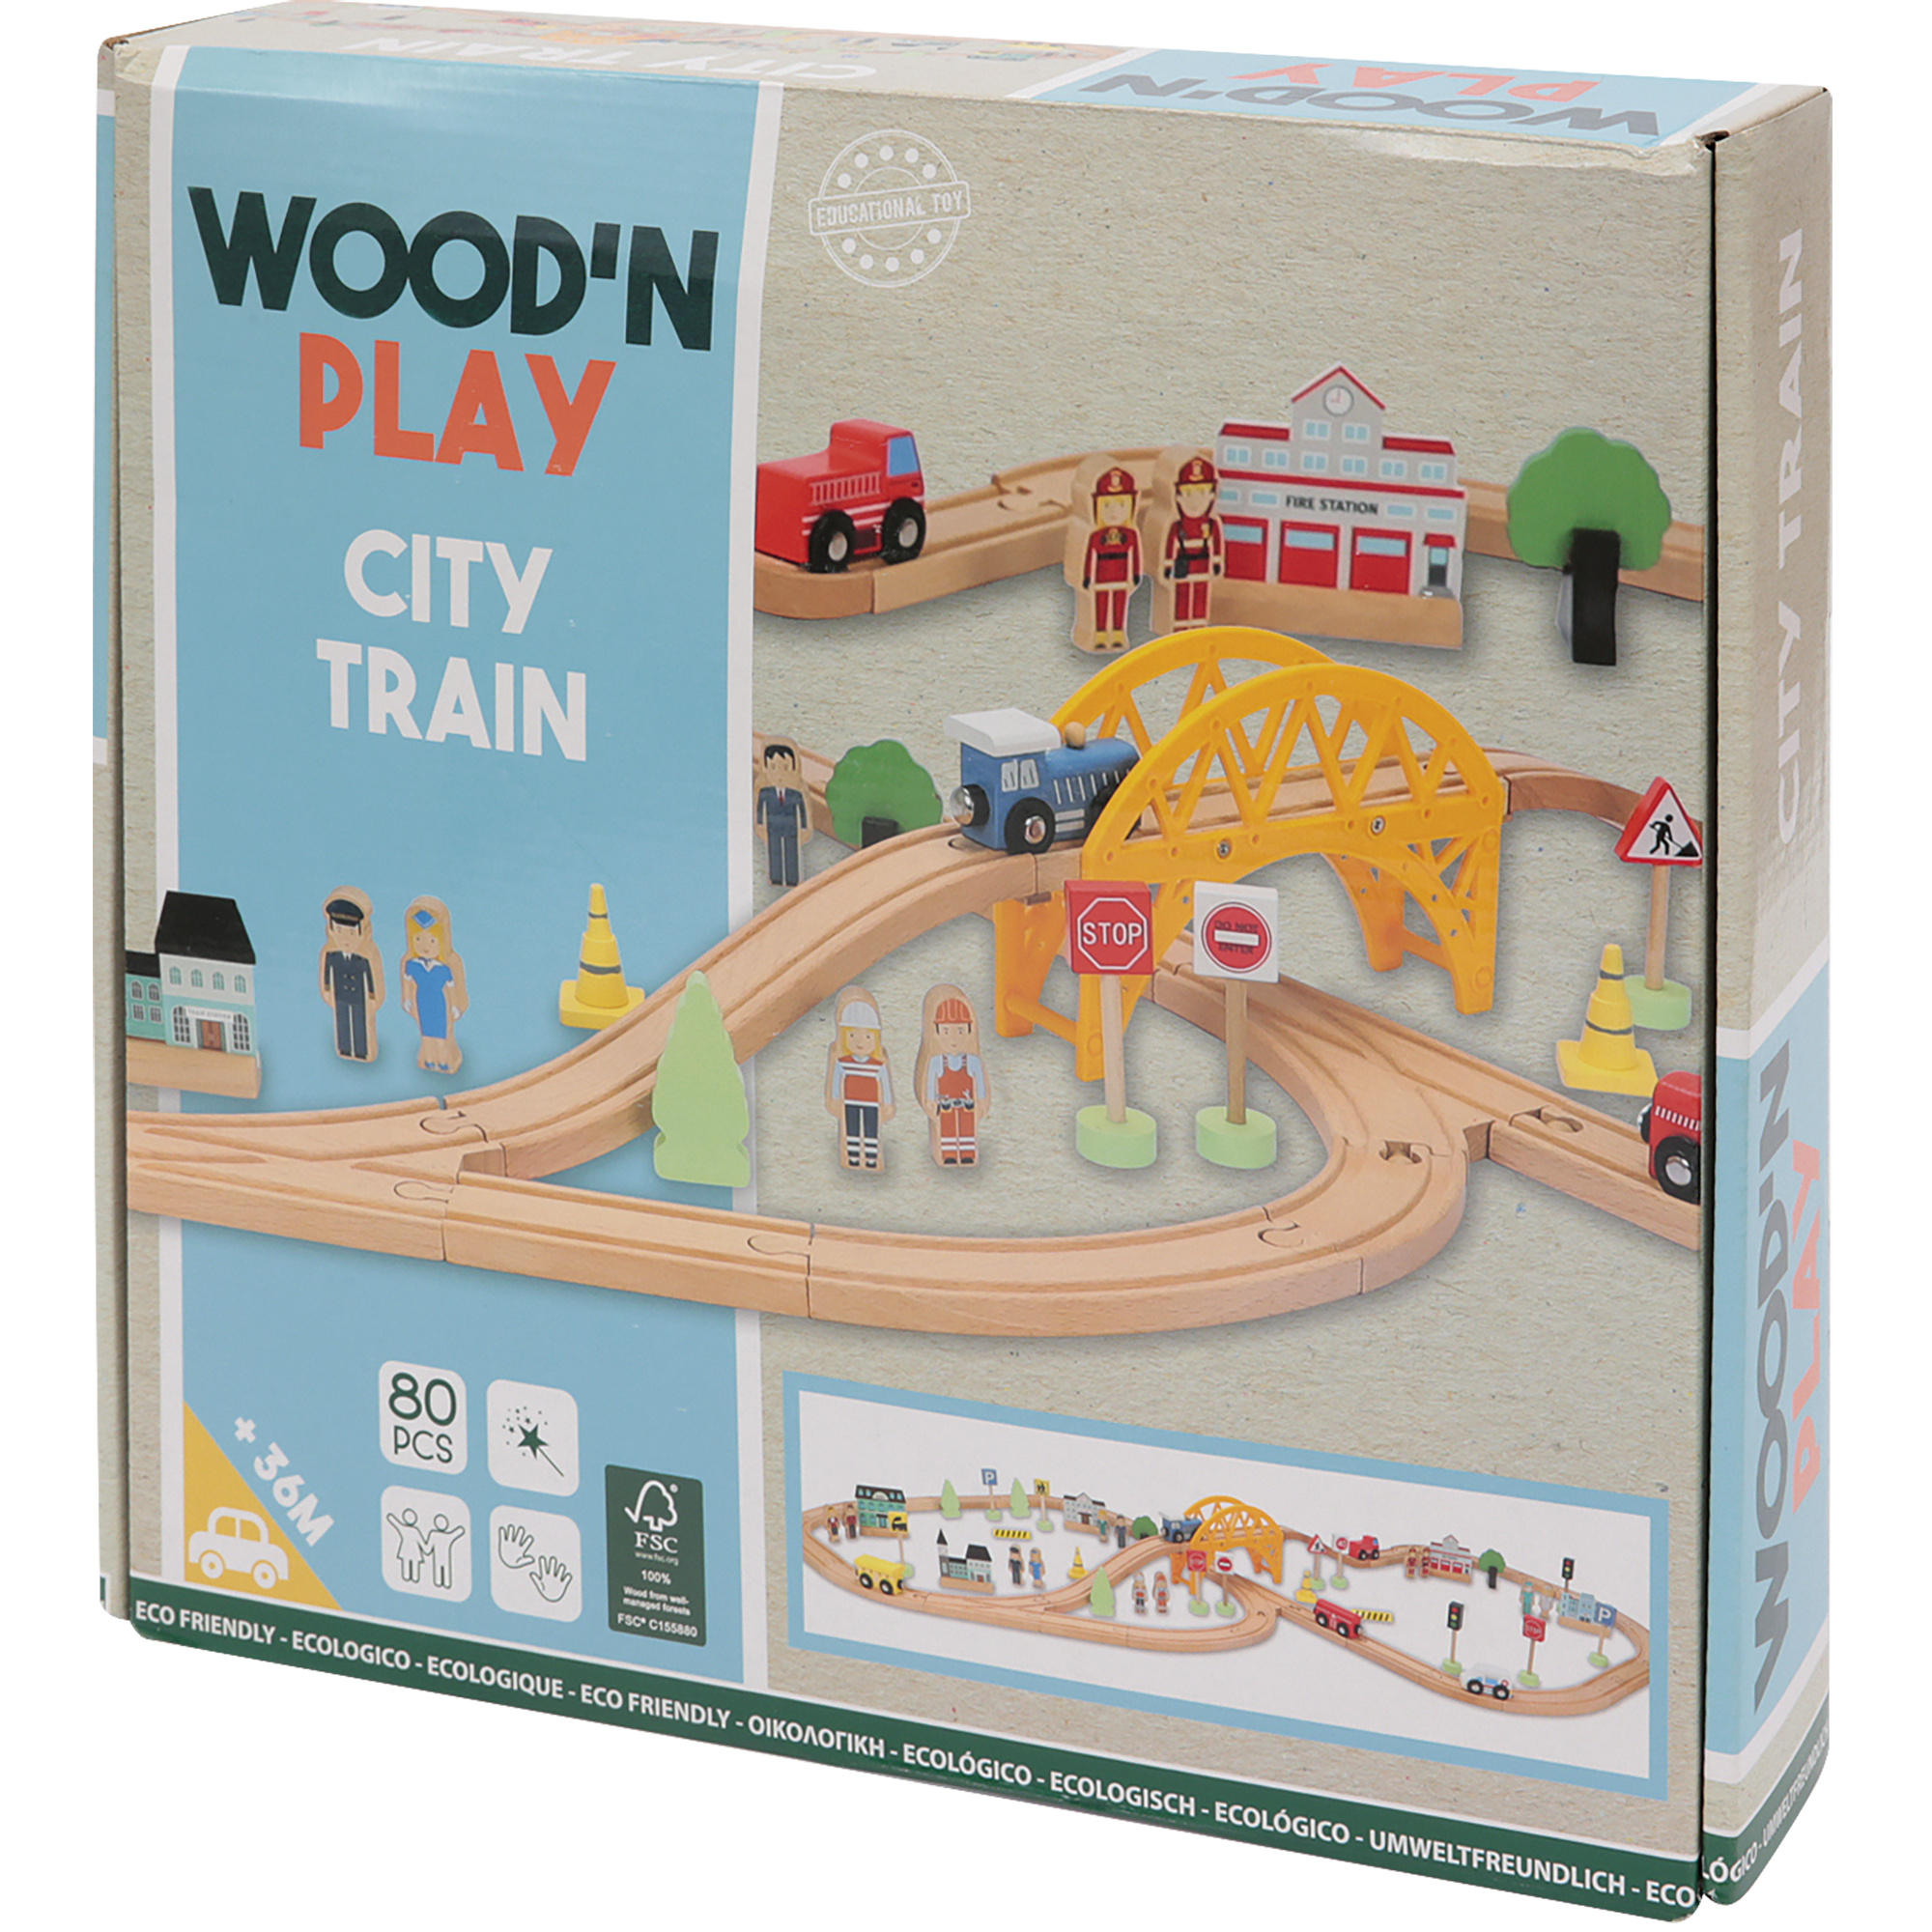 Trenino city - wood 'n' play - WOOD N'PLAY